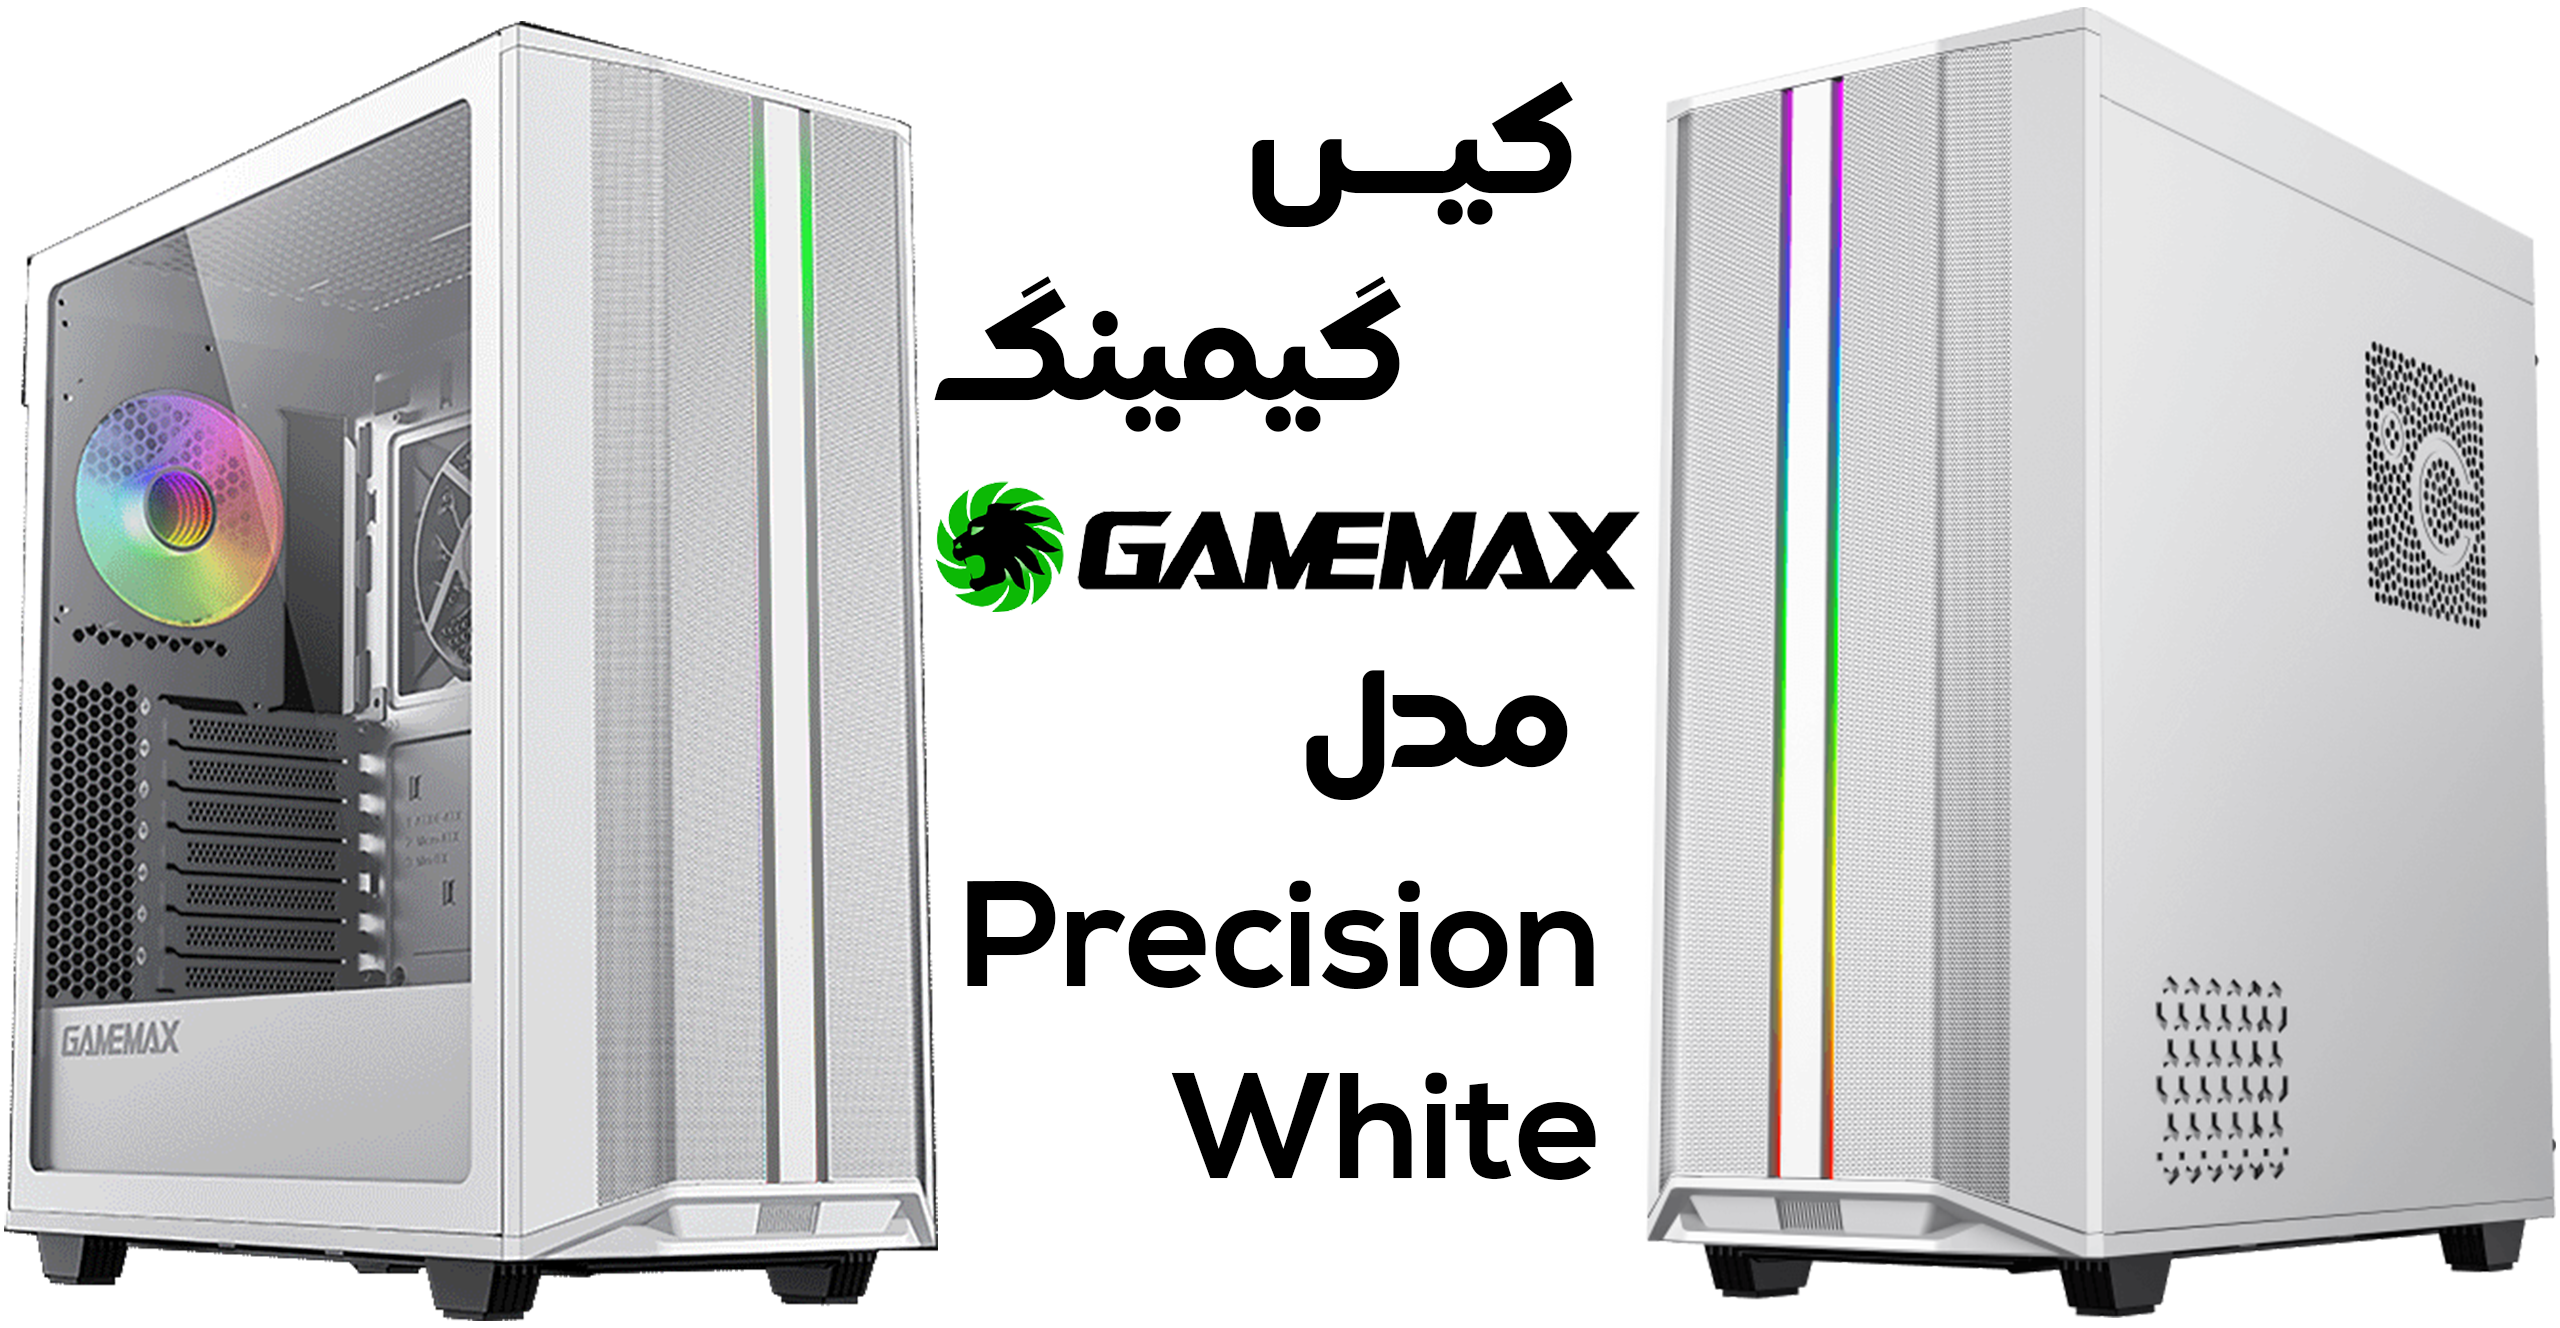 Ú©ÛŒØ³ Ú¯ÛŒÙ…ÛŒÙ†Ú¯ Ú¯ÛŒÙ…â€Œ Ù…Ú©Ø³ Ù…Ø¯Ù„ Gamemax Precision White 